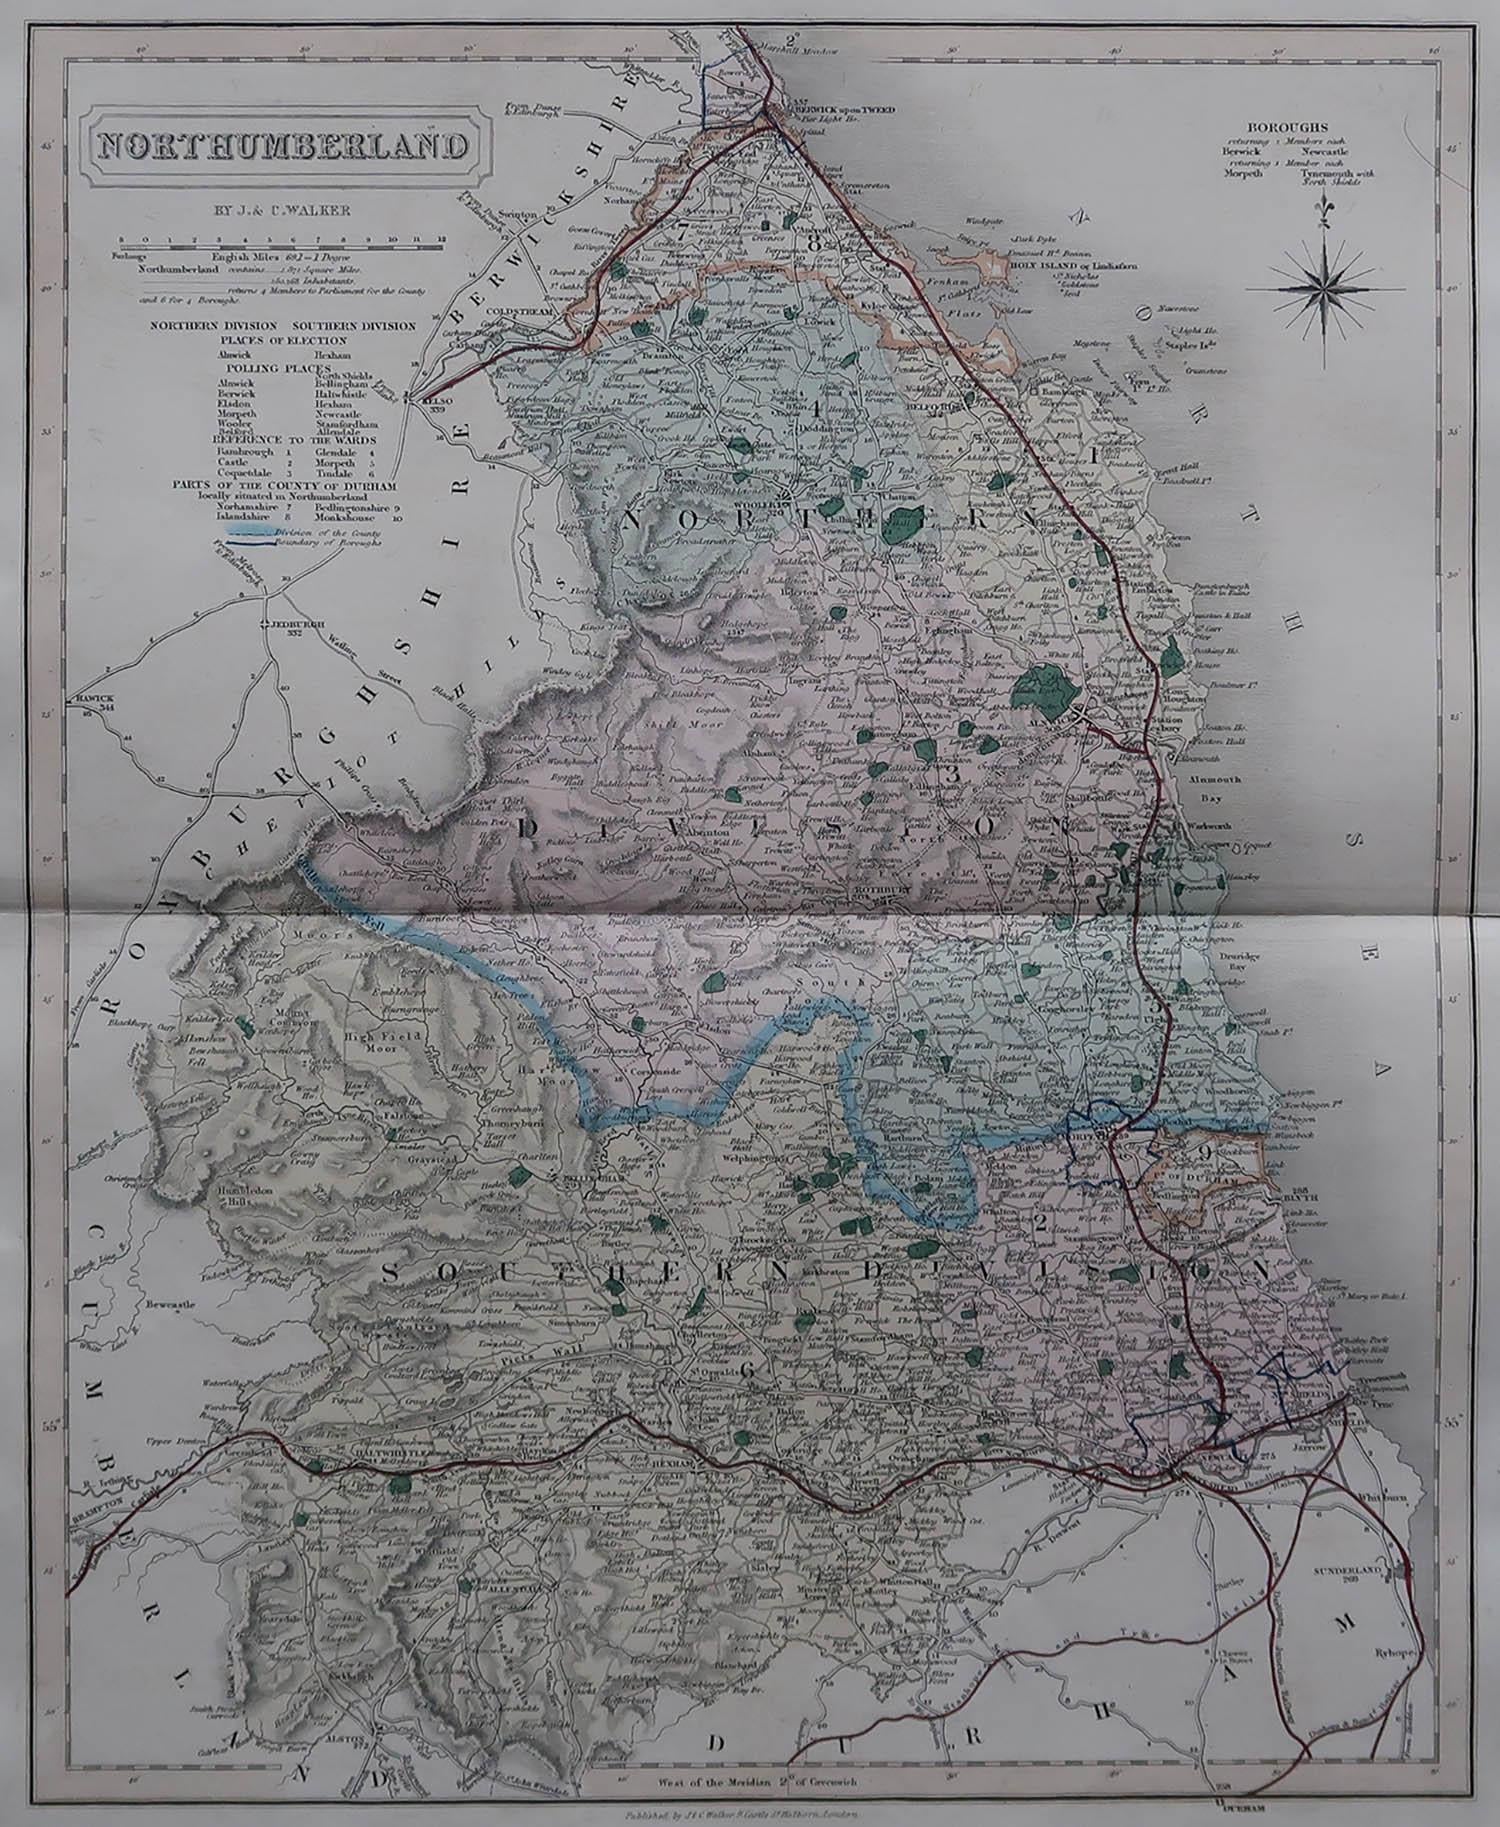 Tolle Karte von Northumberland

Original Farbe

Von J & C Walker

Veröffentlicht von Longman, Rees, Orme, Brown & Co. 1851

Ungerahmt.




